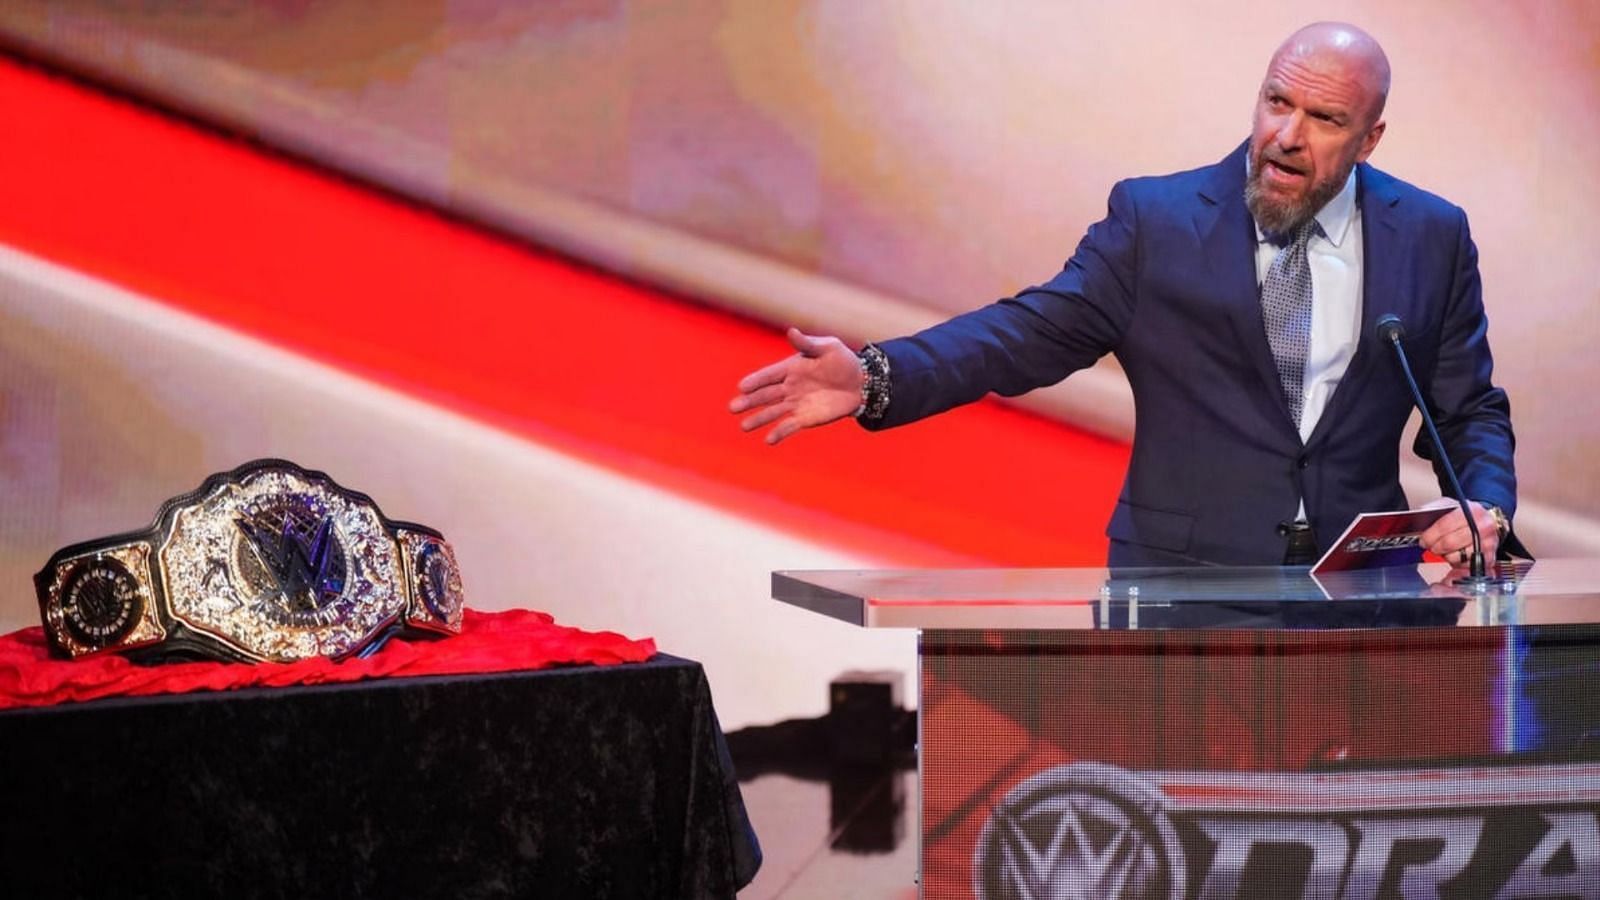 ट्रिपल एच ने हाल में ही WWE वर्ल्ड हैवीवेट चैम्पियनशिप वापस लाएं हैं